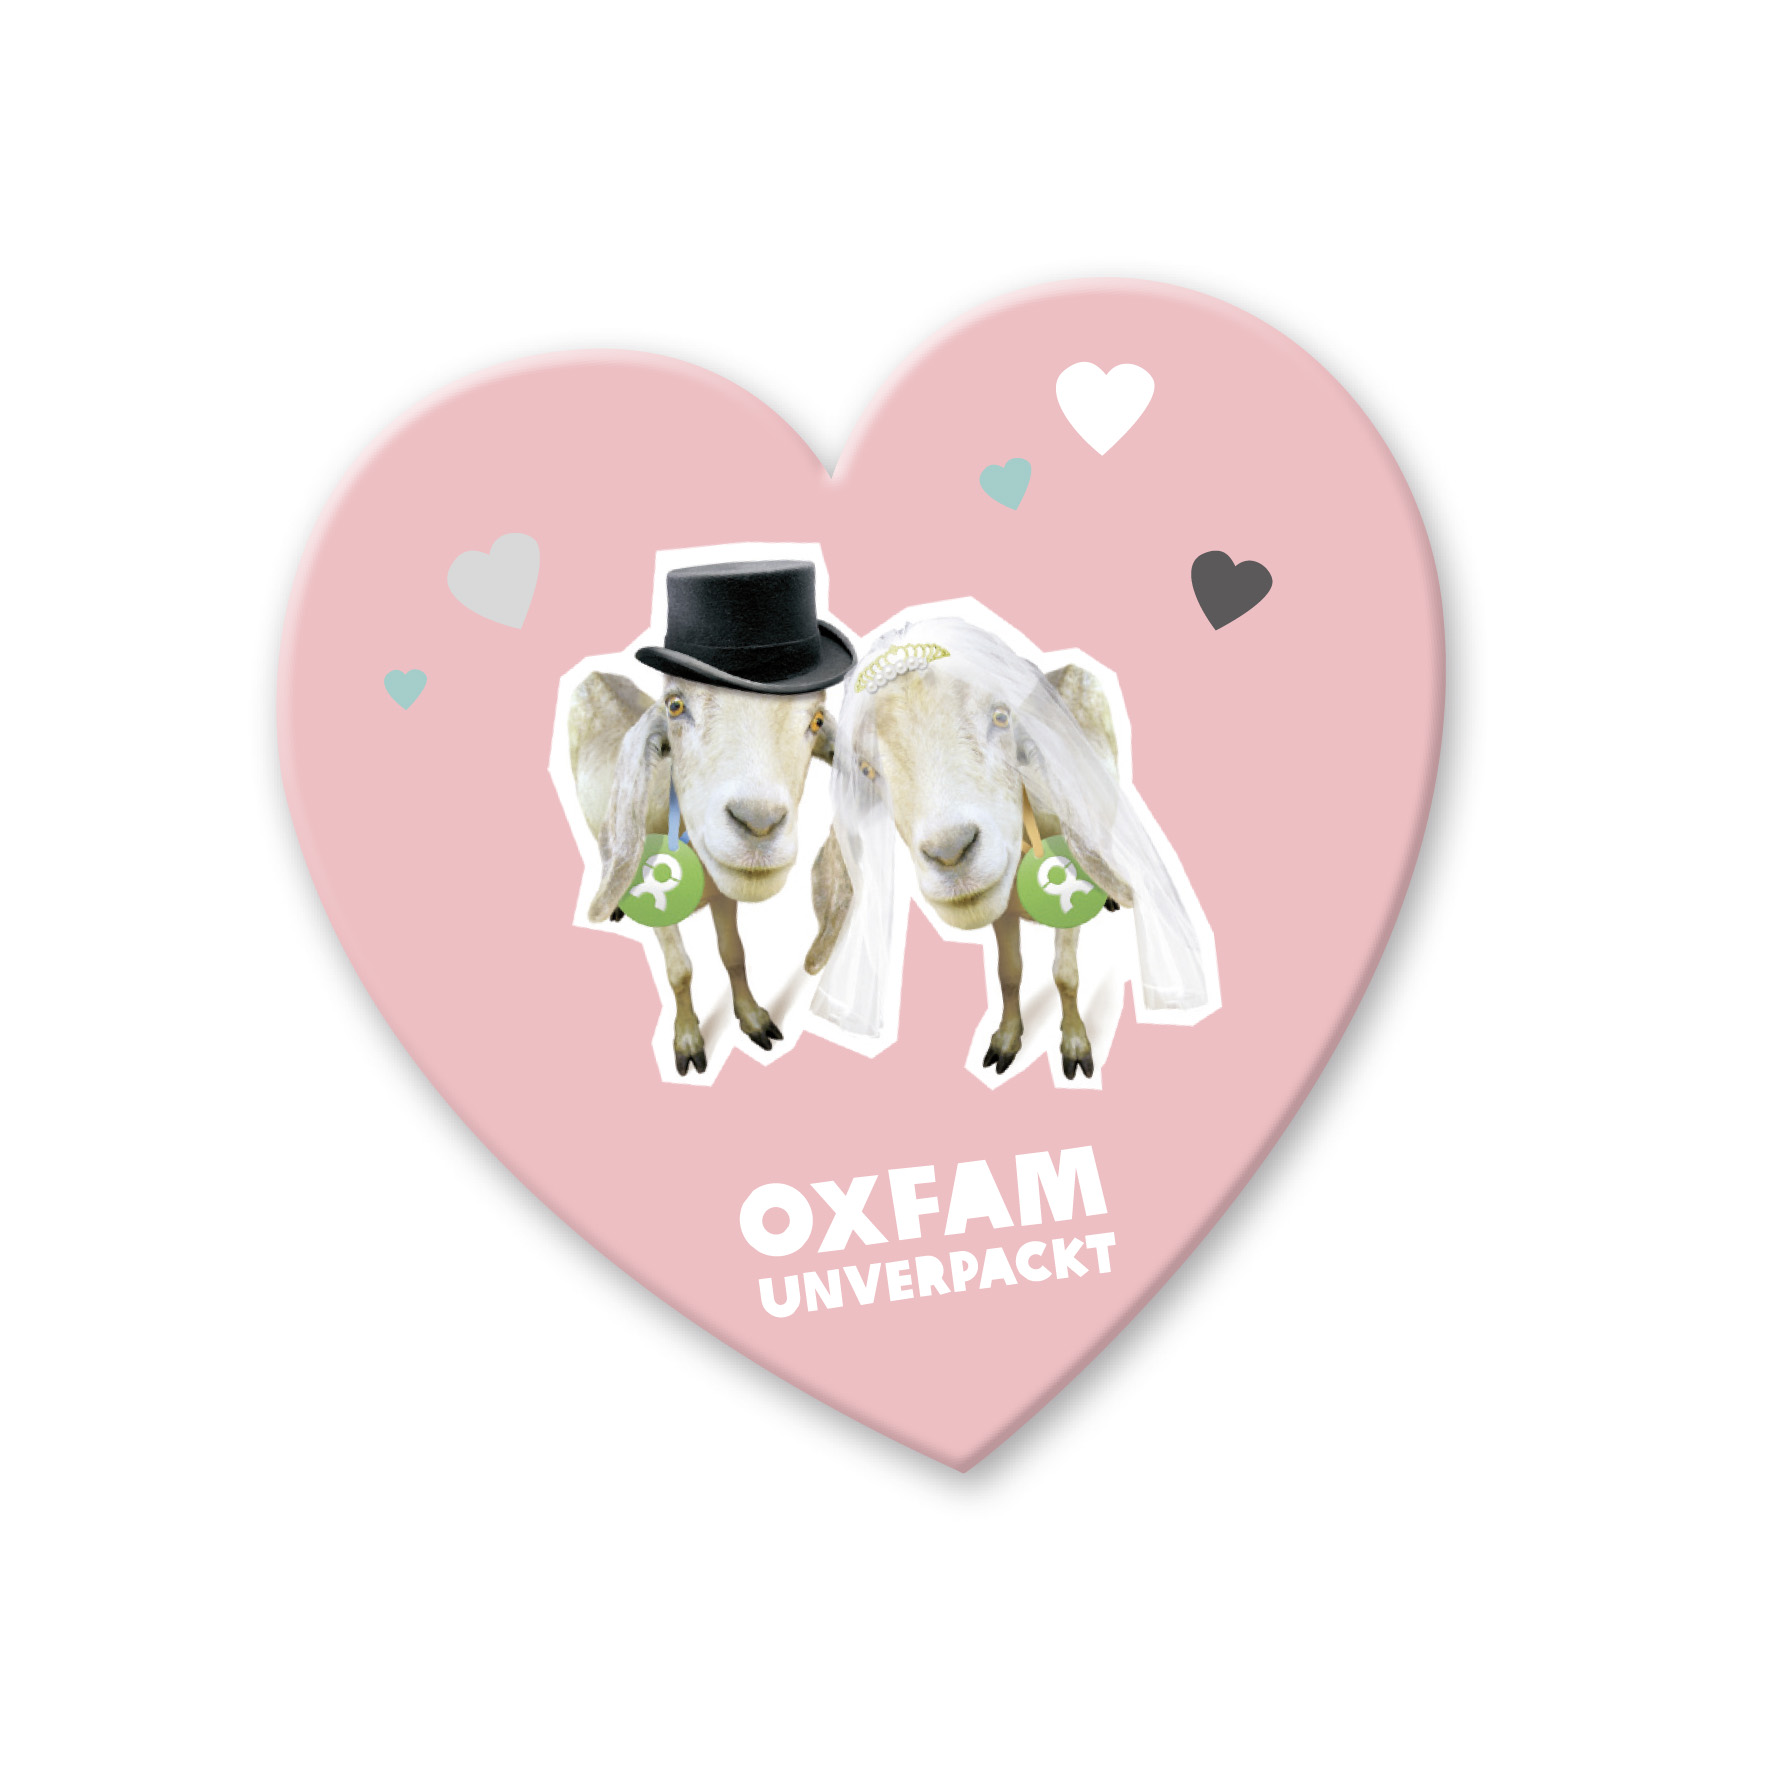 Geschenk Spende Hochzeit: Magnet Rosa Herz bedruckt mit einer Grafik von einem Ziegenpärchen mit Zylinder und Schleier und bunten Herzen. Darunter Aufschrift: Oxfam Unverpackt.